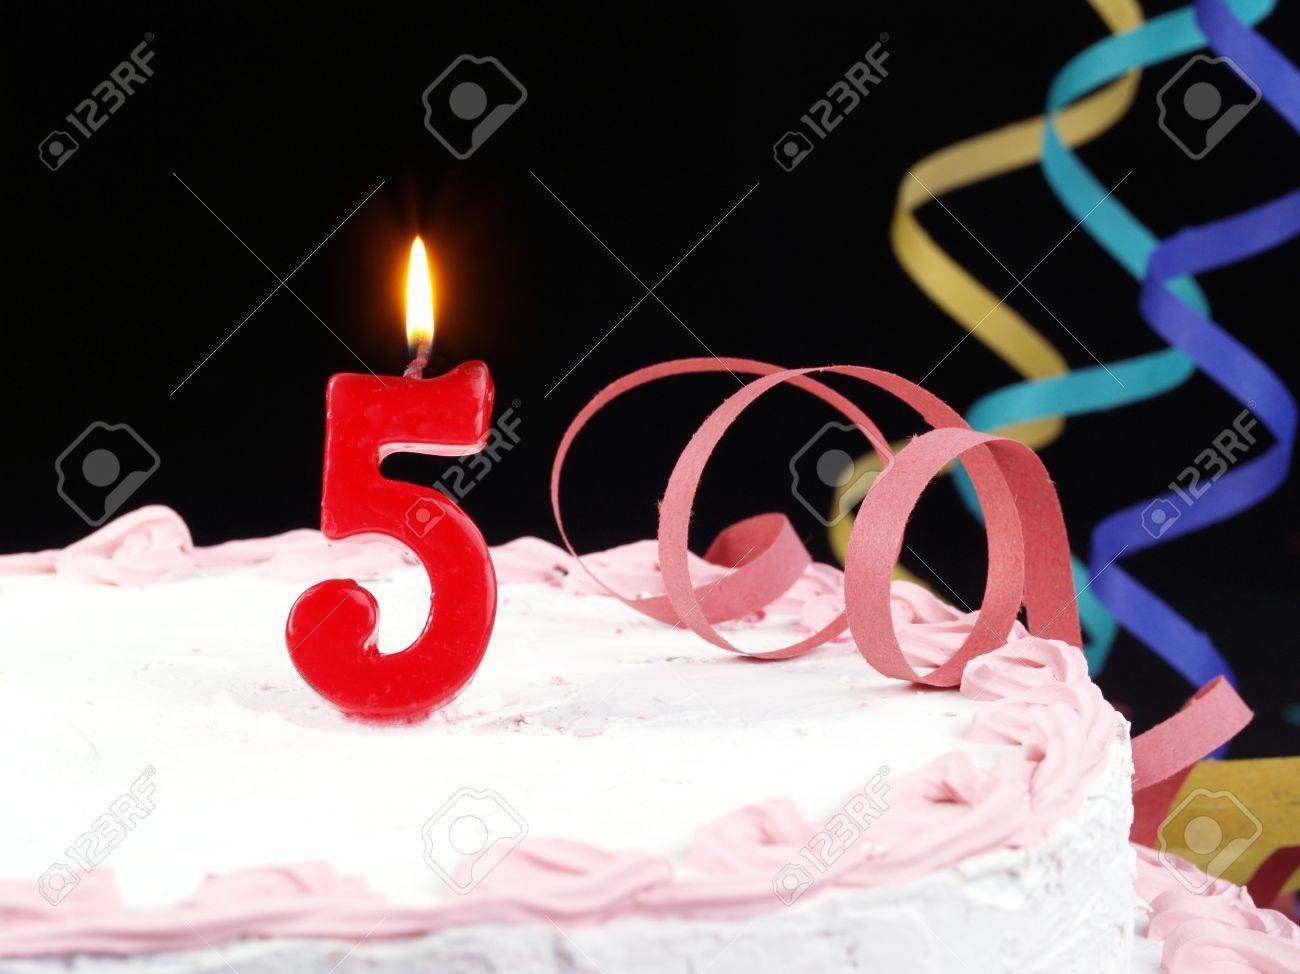 Торт 5 свечей. Торт со свечкой 5 лет. Тортик с пятью свечками. Торт с 5 свечками. Поздравляю с 5 месяцами отношений.